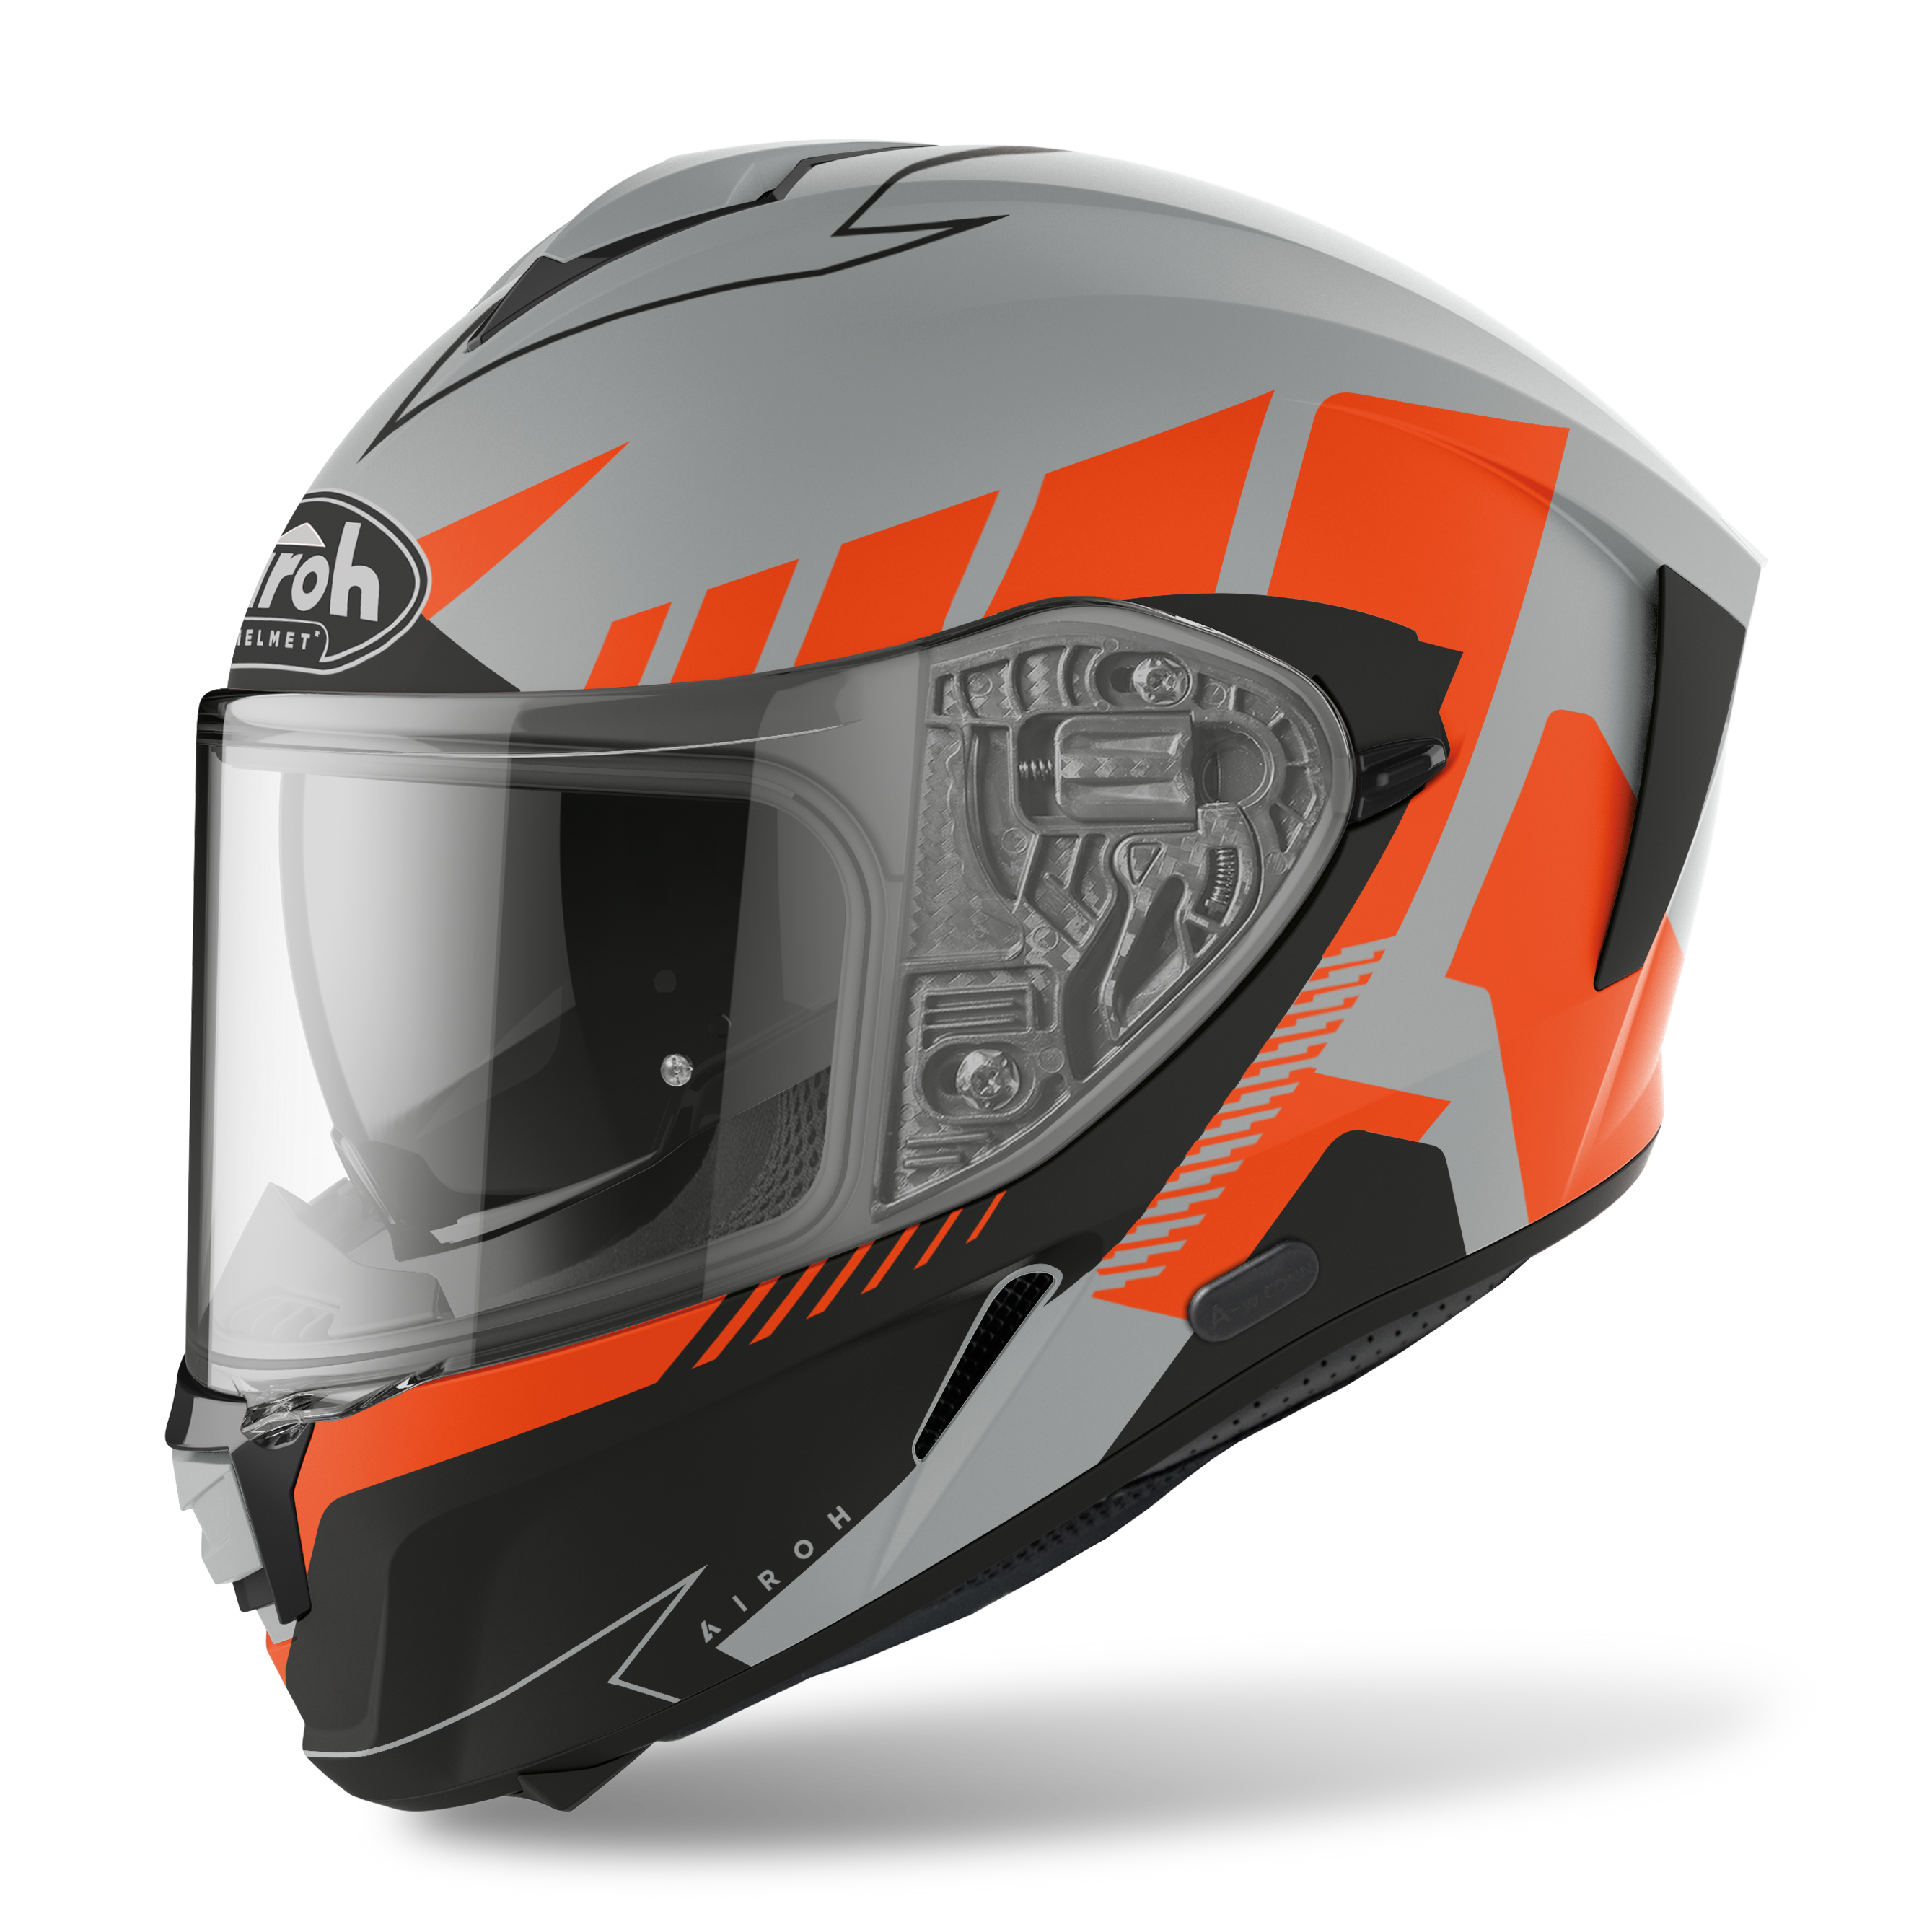 Airoh Spark Rise Orange Matt Helmet